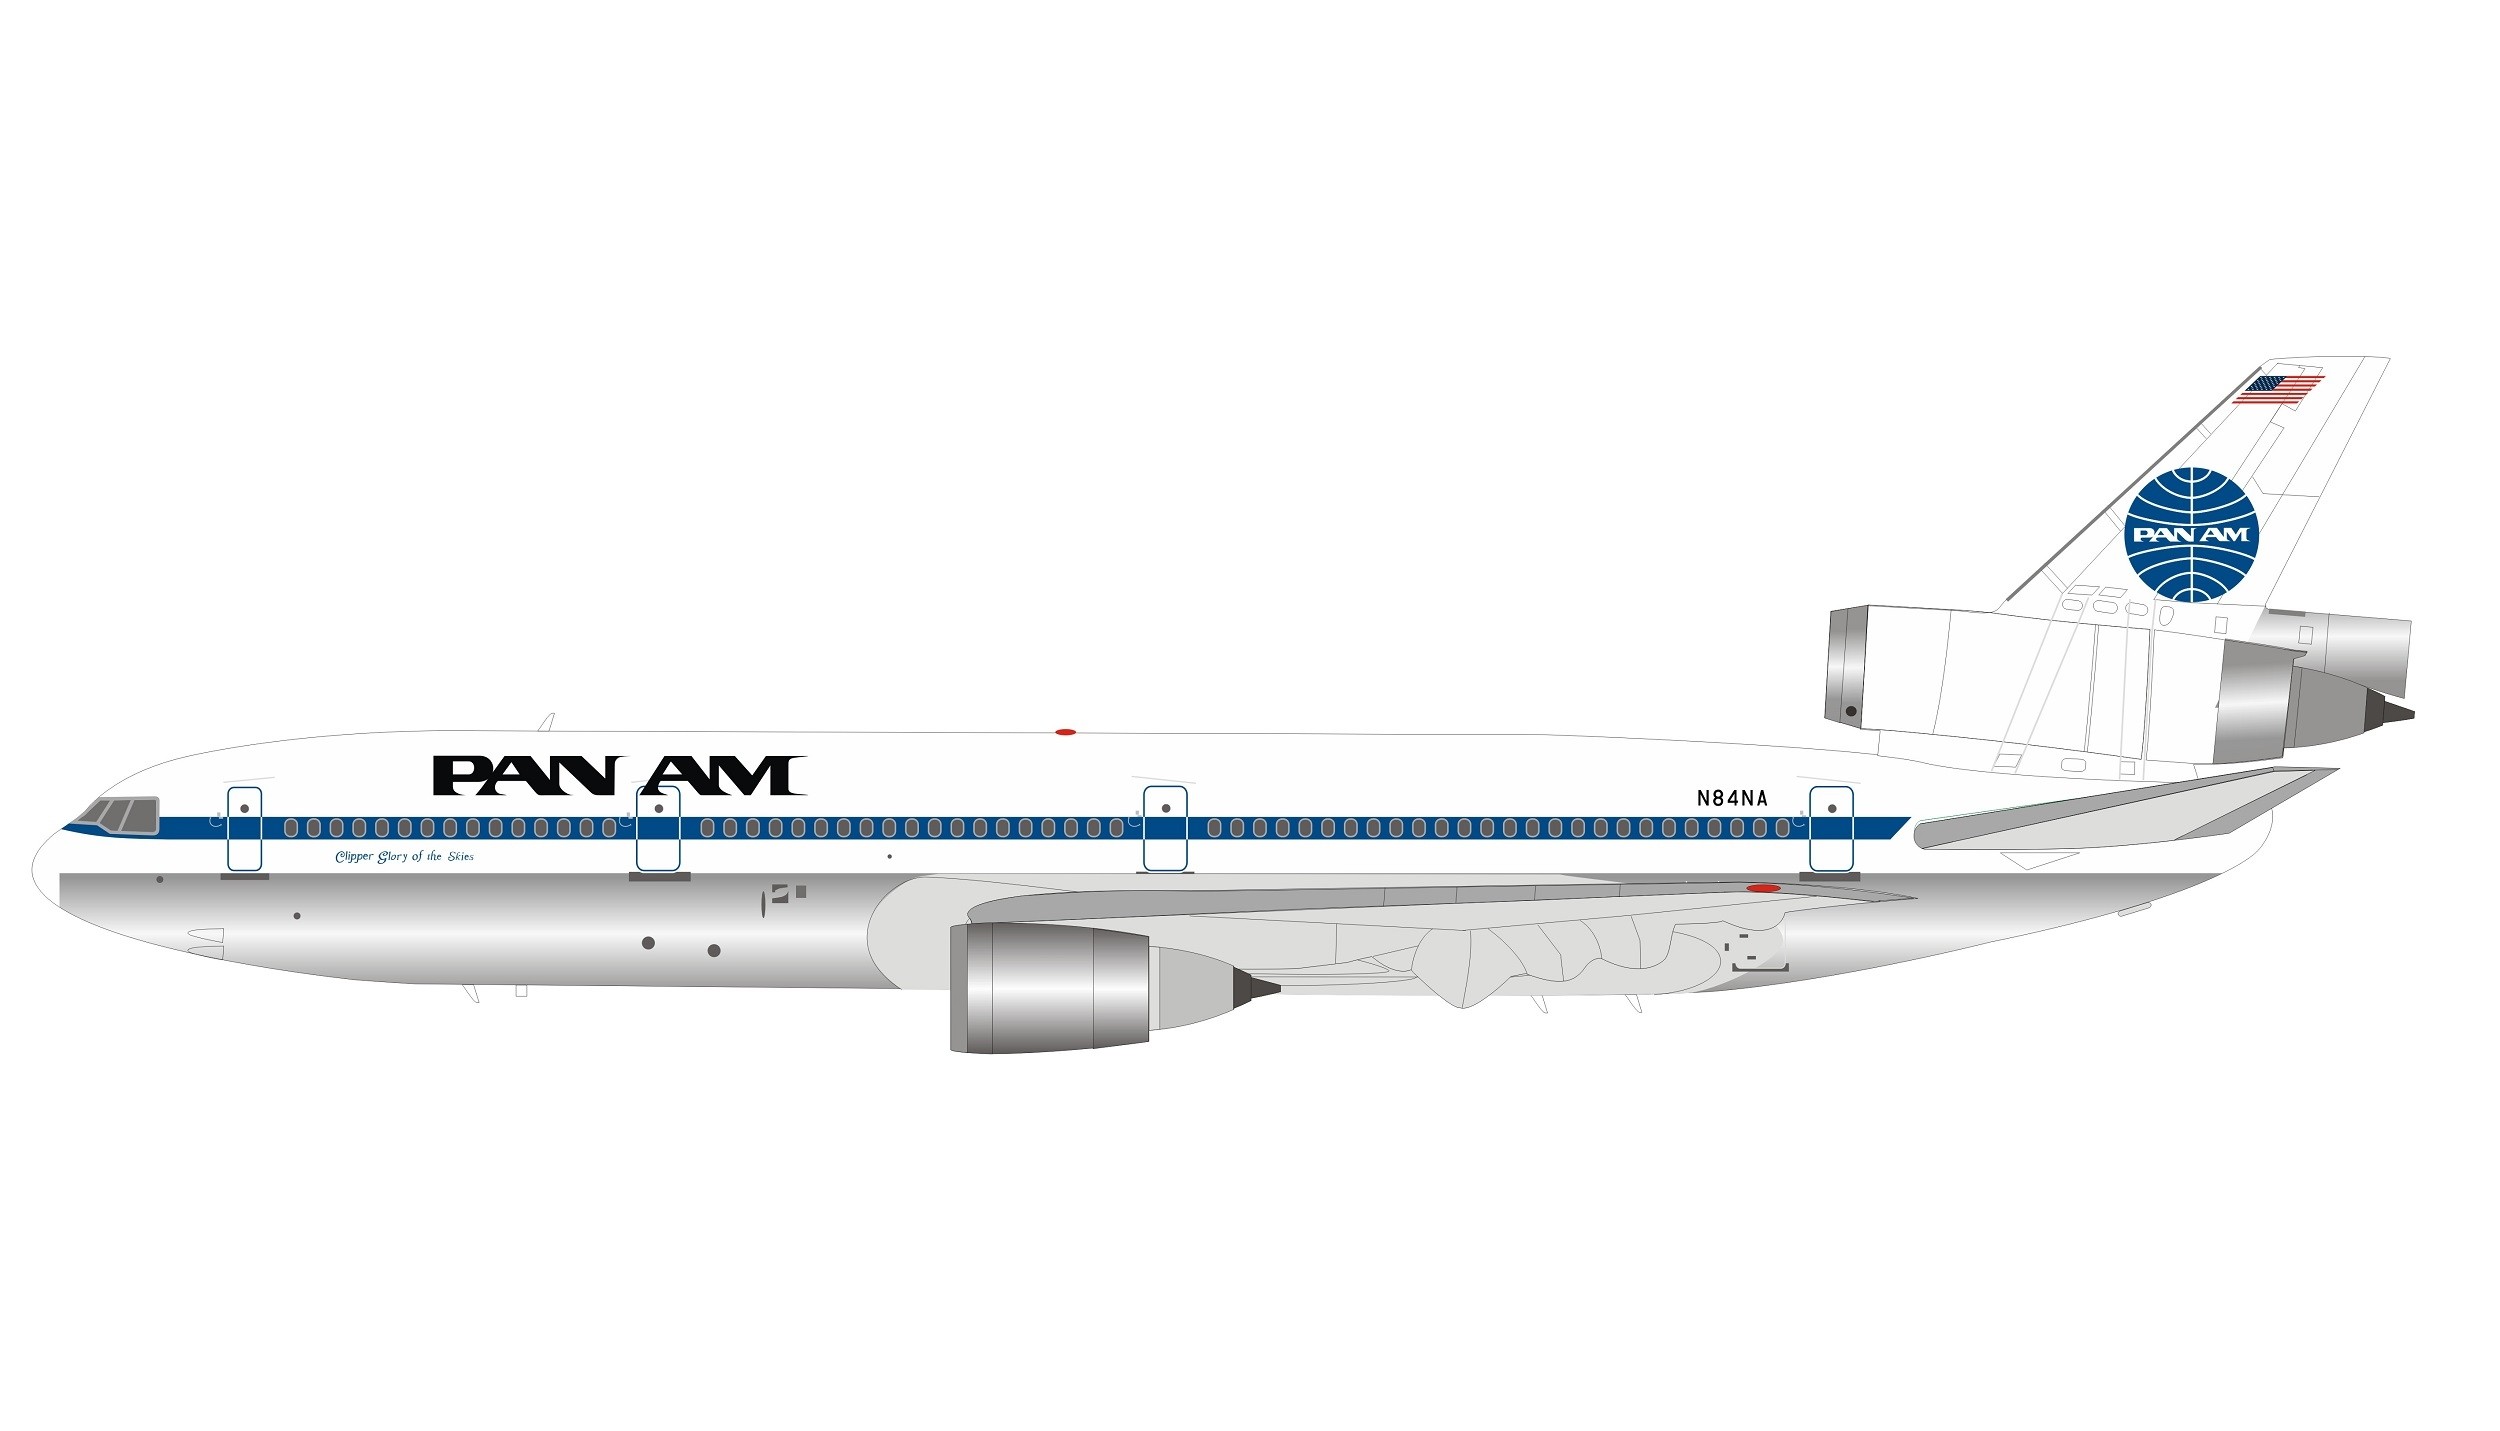 Pan Am Flight 1-10 - Wikipedia